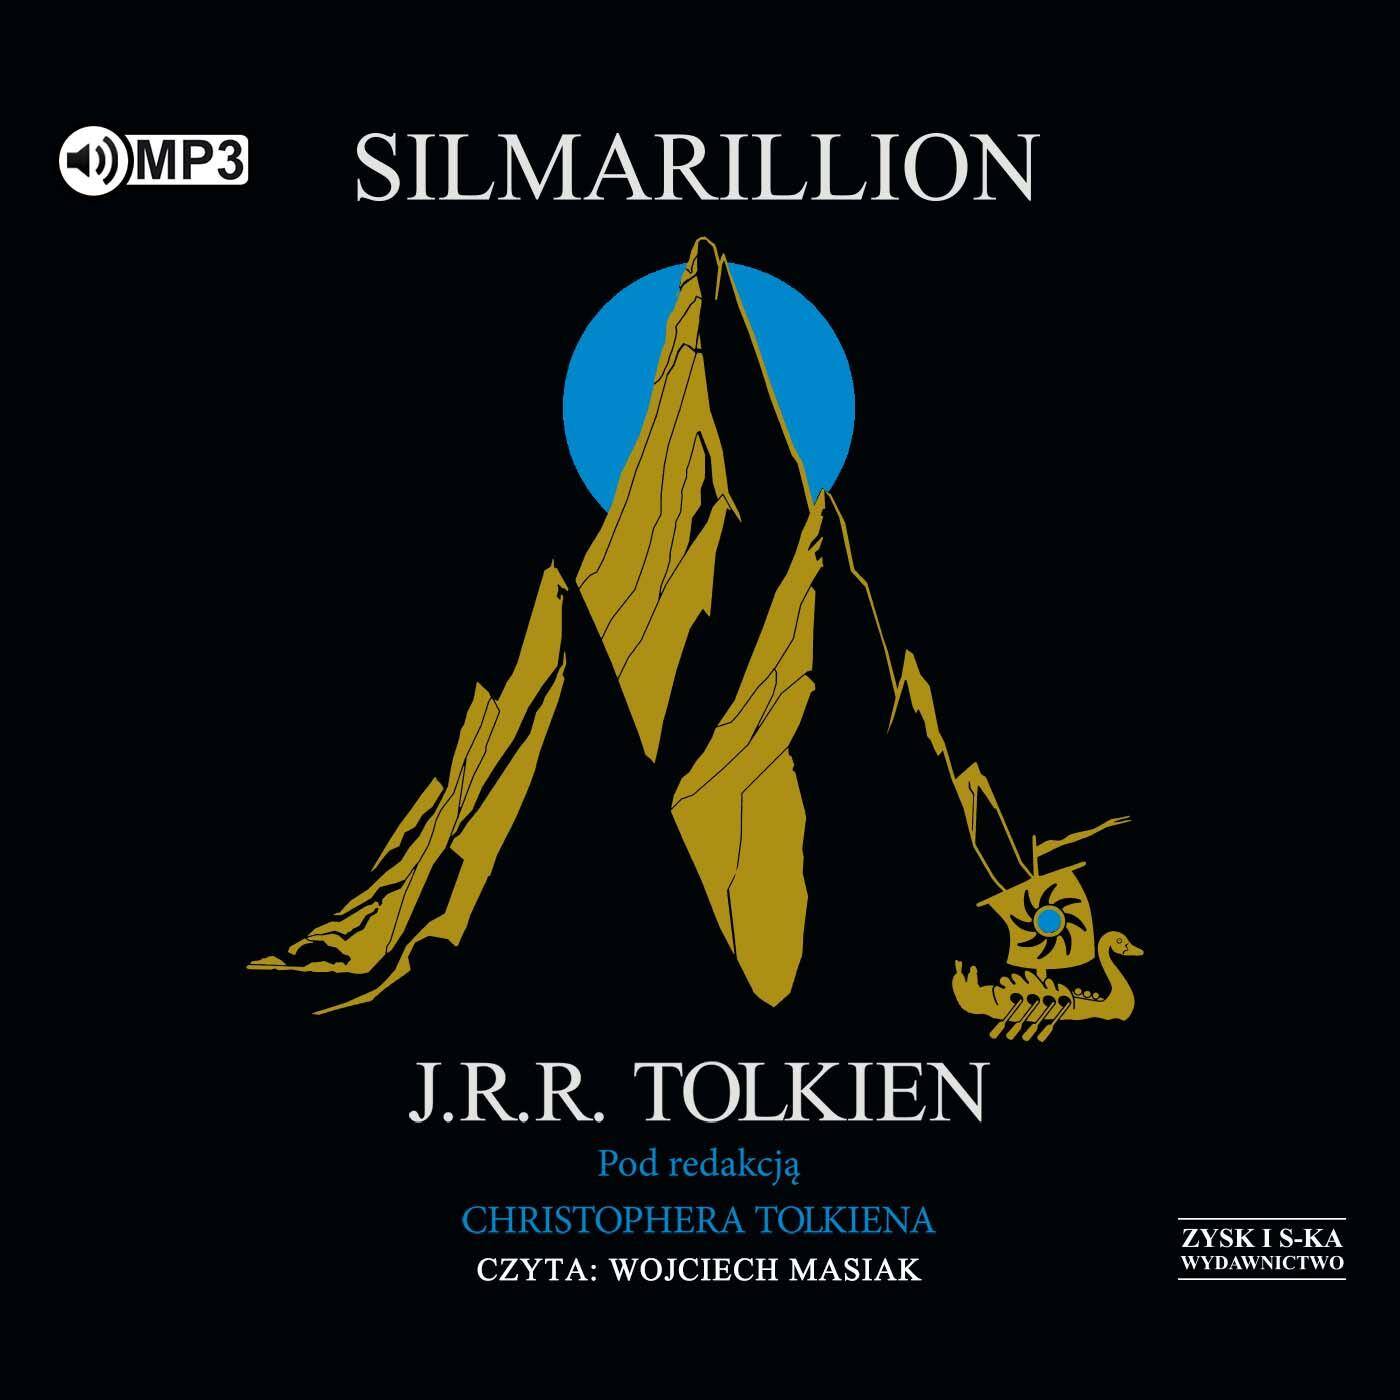 CD MP3 Silmarillion